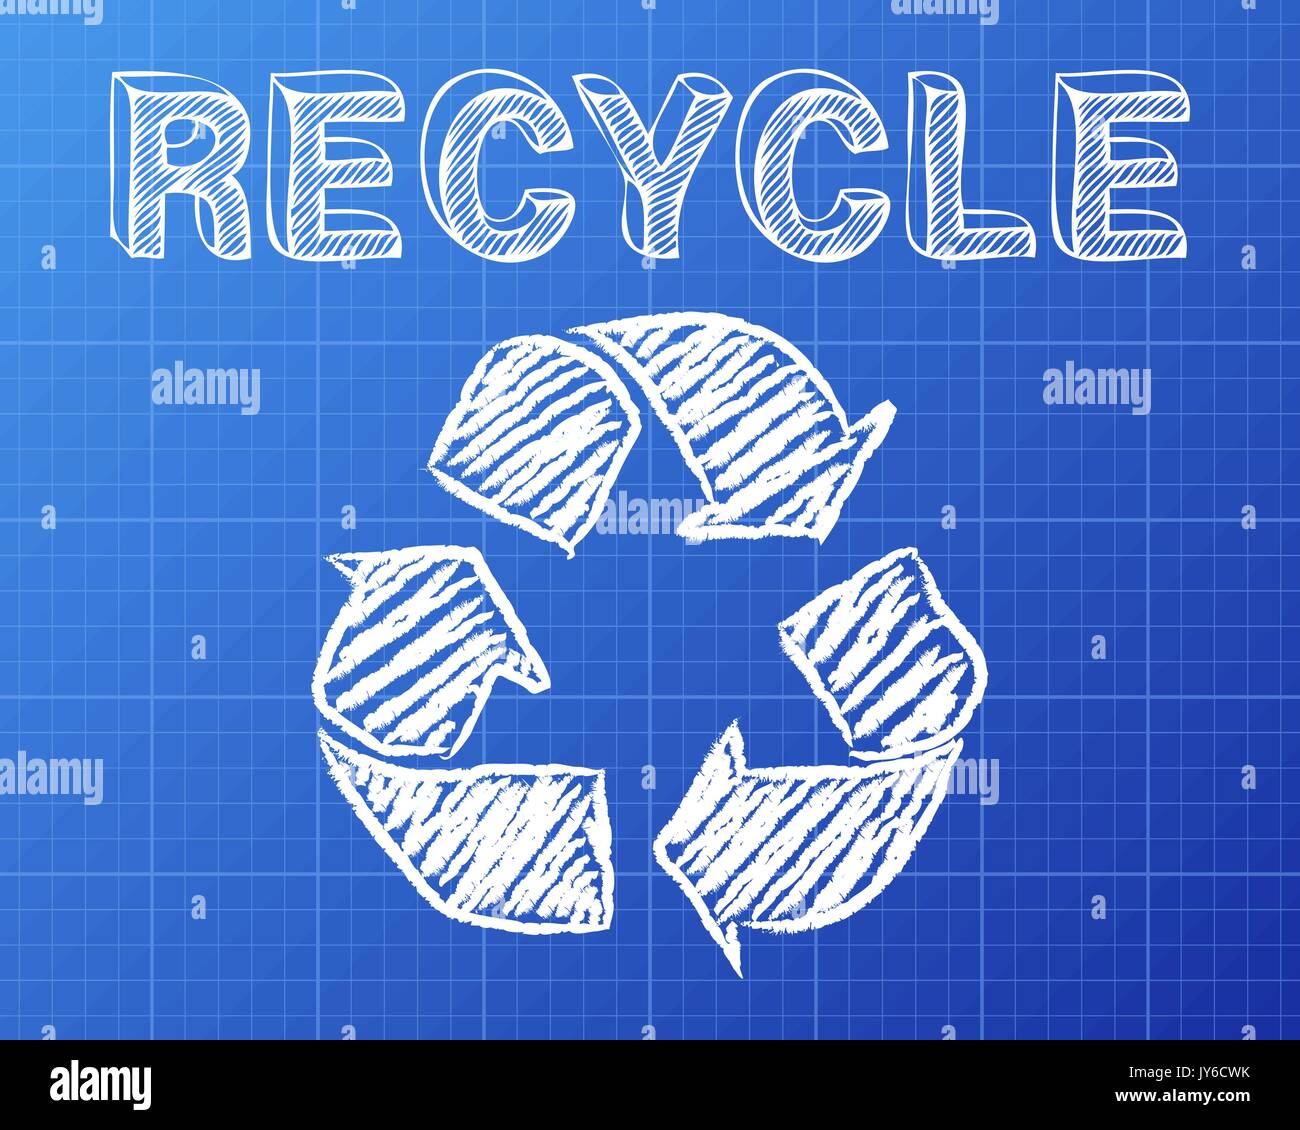 Simbolo di riciclaggio e di parola disegnati su sfondo blueprint Illustrazione Vettoriale